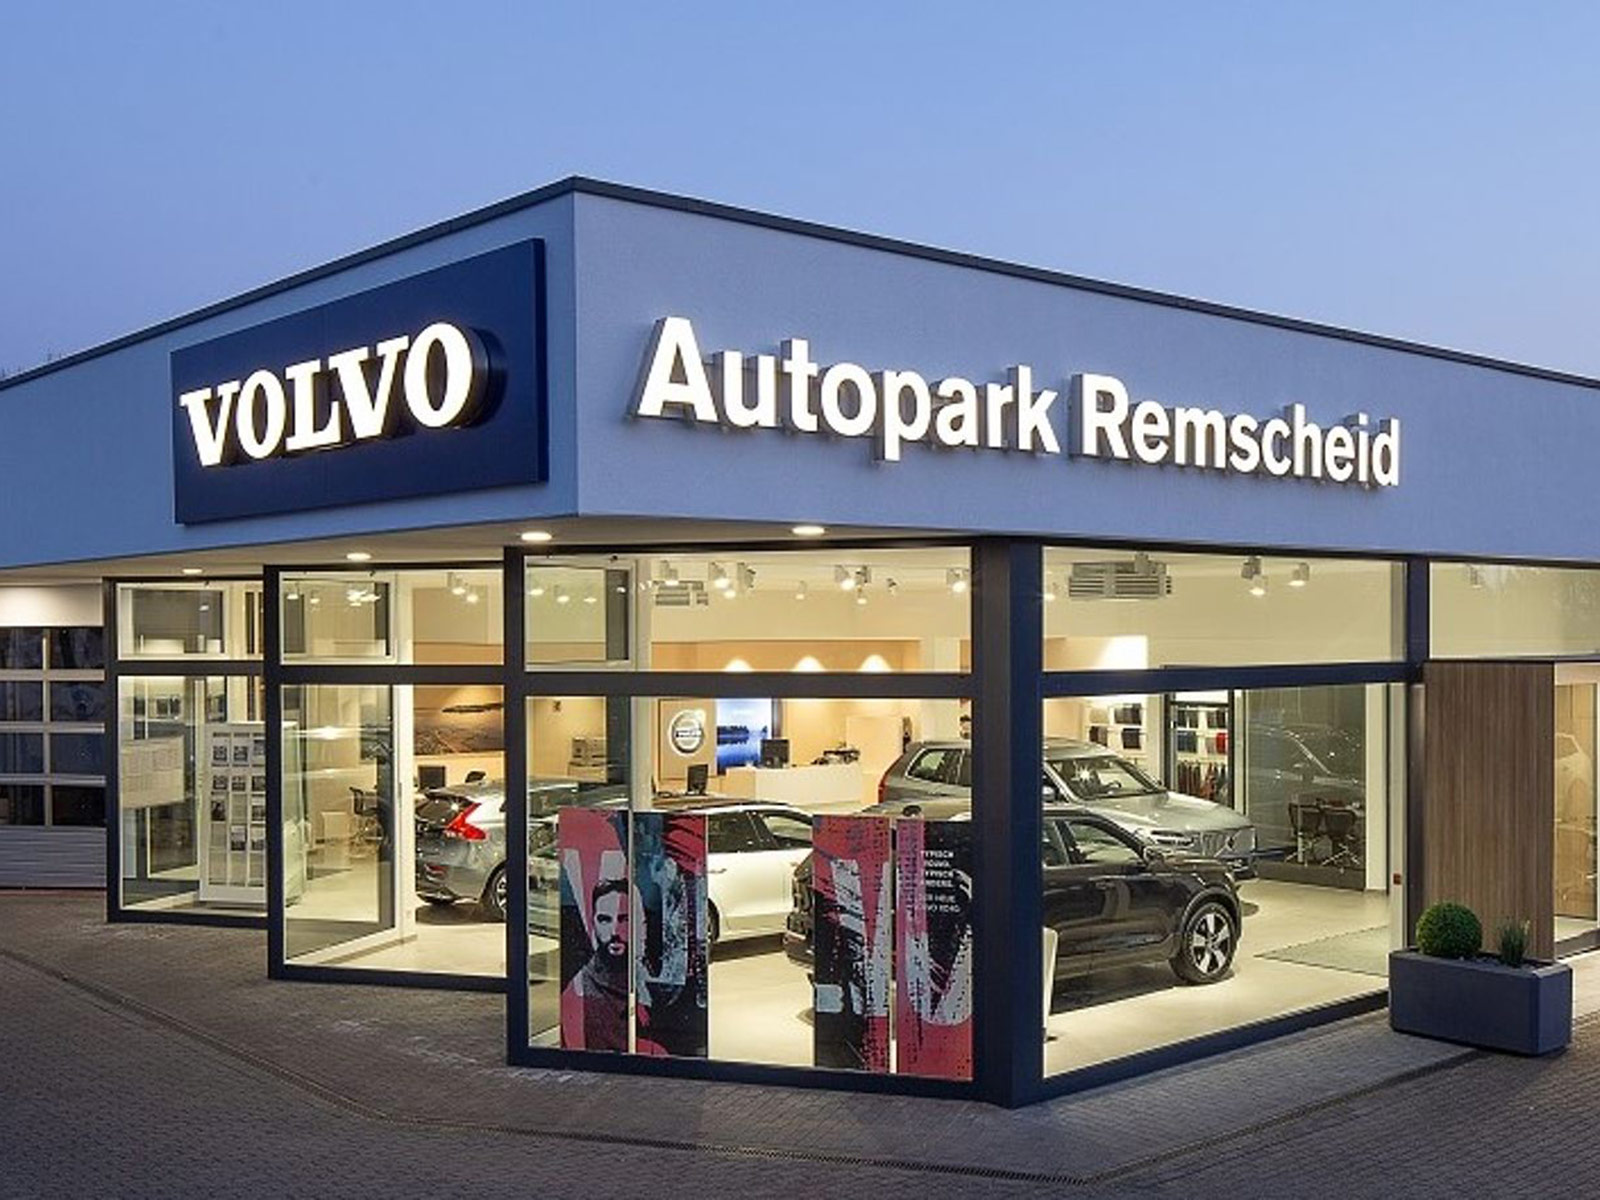 Außenansicht der MOBILITÄTSGRUPPE AMELUNG am Standort Remscheid. Der Standort führt die Marke Volvo.